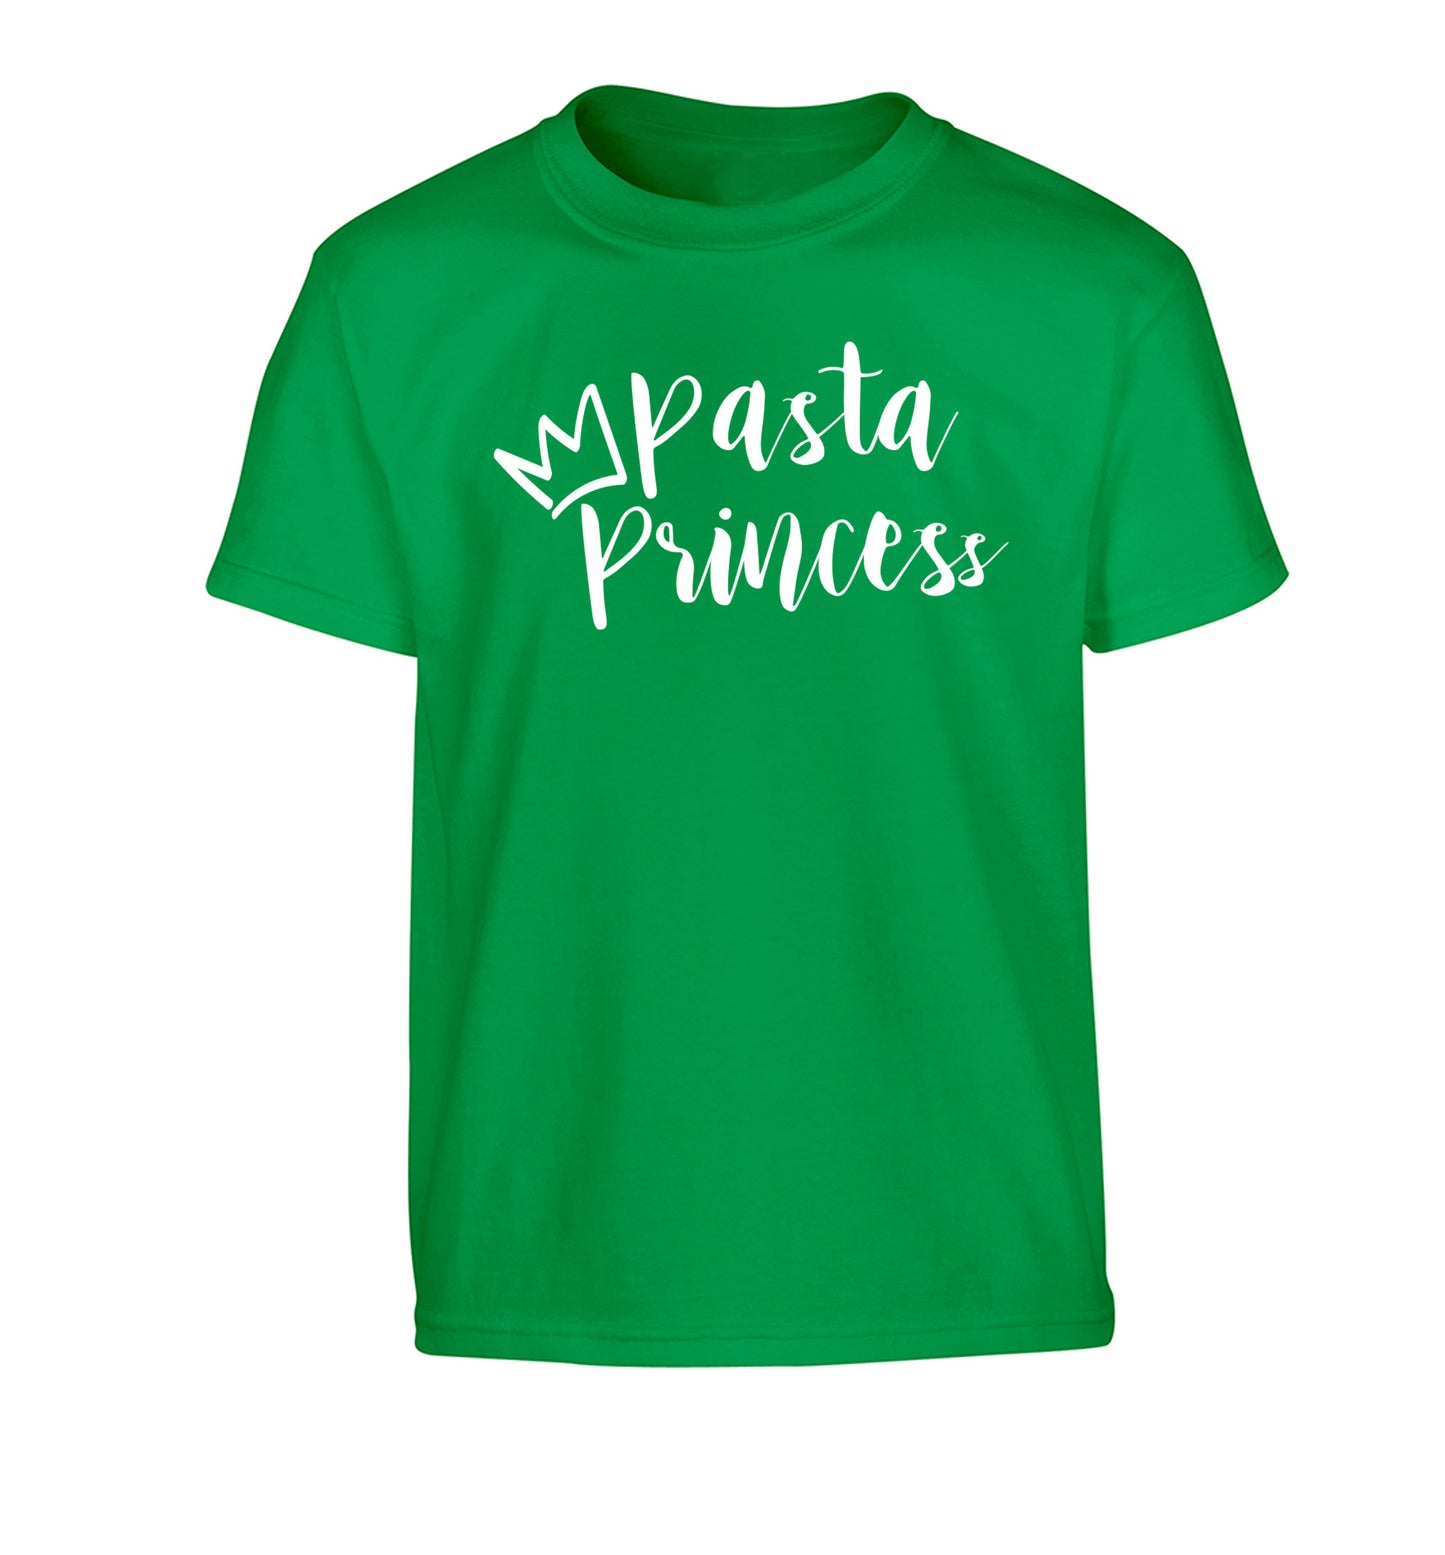 Pasta Princess Children's green Tshirt 12-14 Years